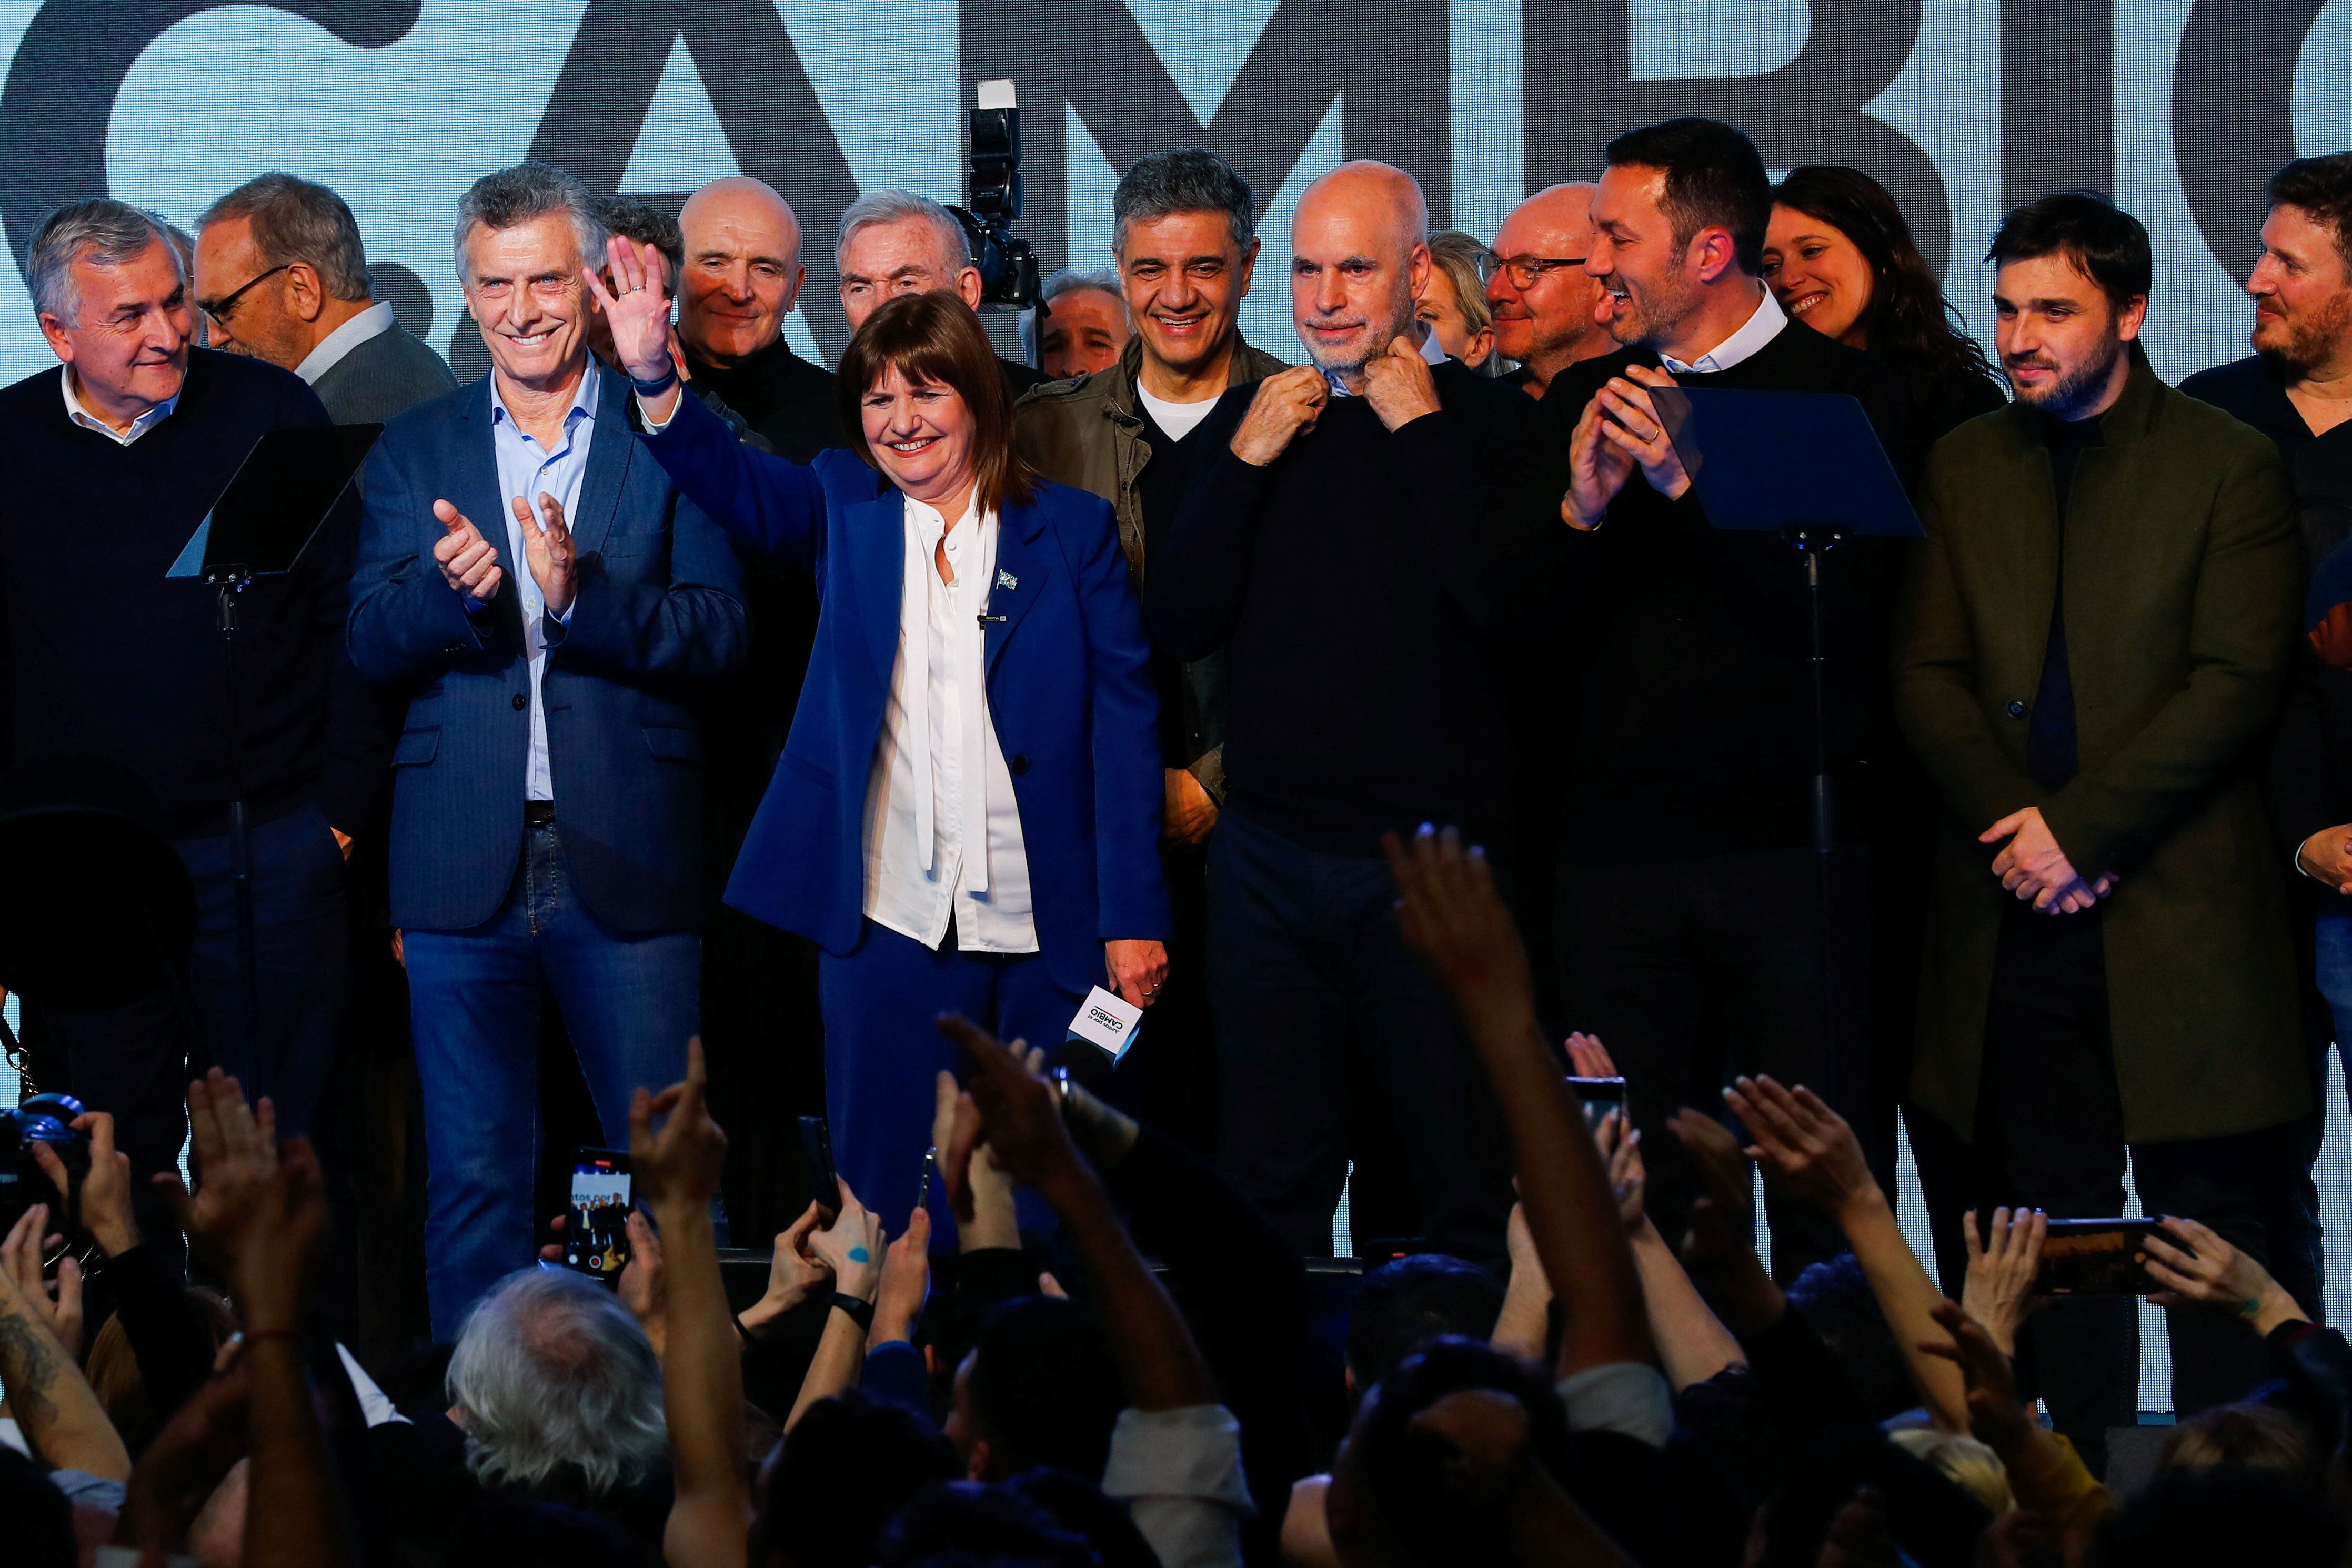 La última foto juntos. Macri, Rodríguez Larreta, Gerardo Morales, Patricia Bullrich y Petri, entre otros (foto Reuters)   